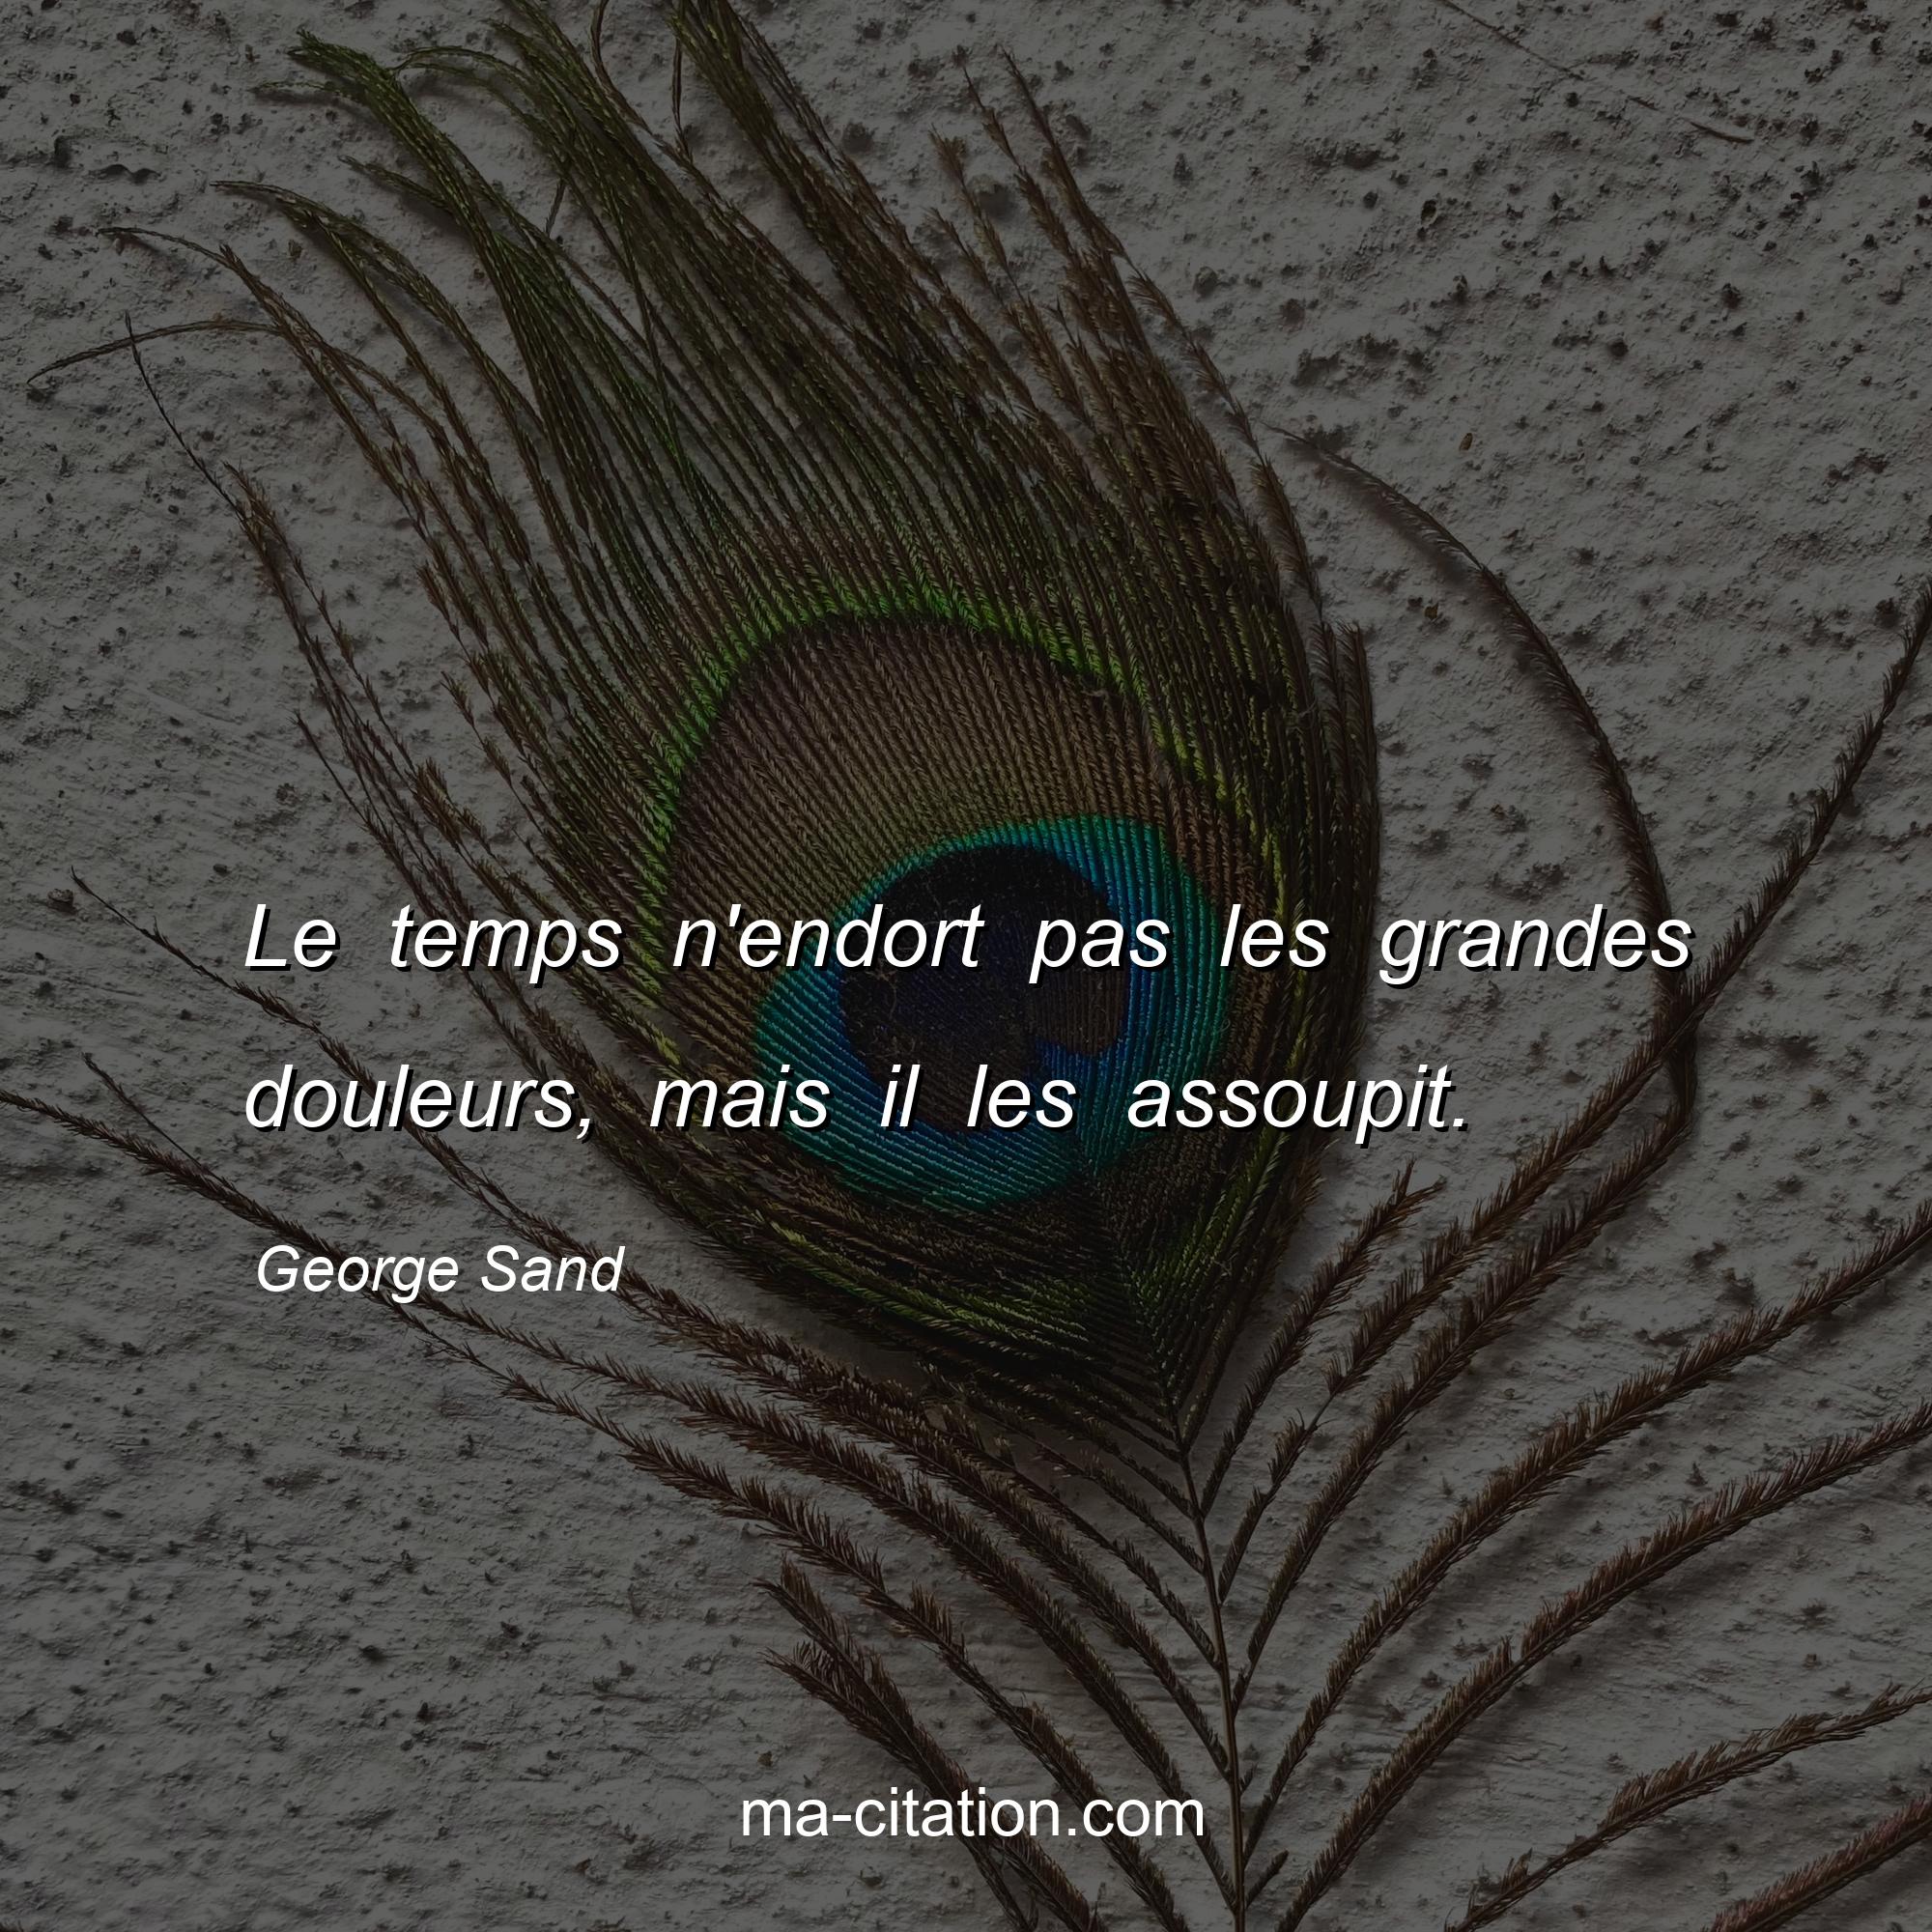 George Sand : Le temps n'endort pas les grandes douleurs, mais il les assoupit.